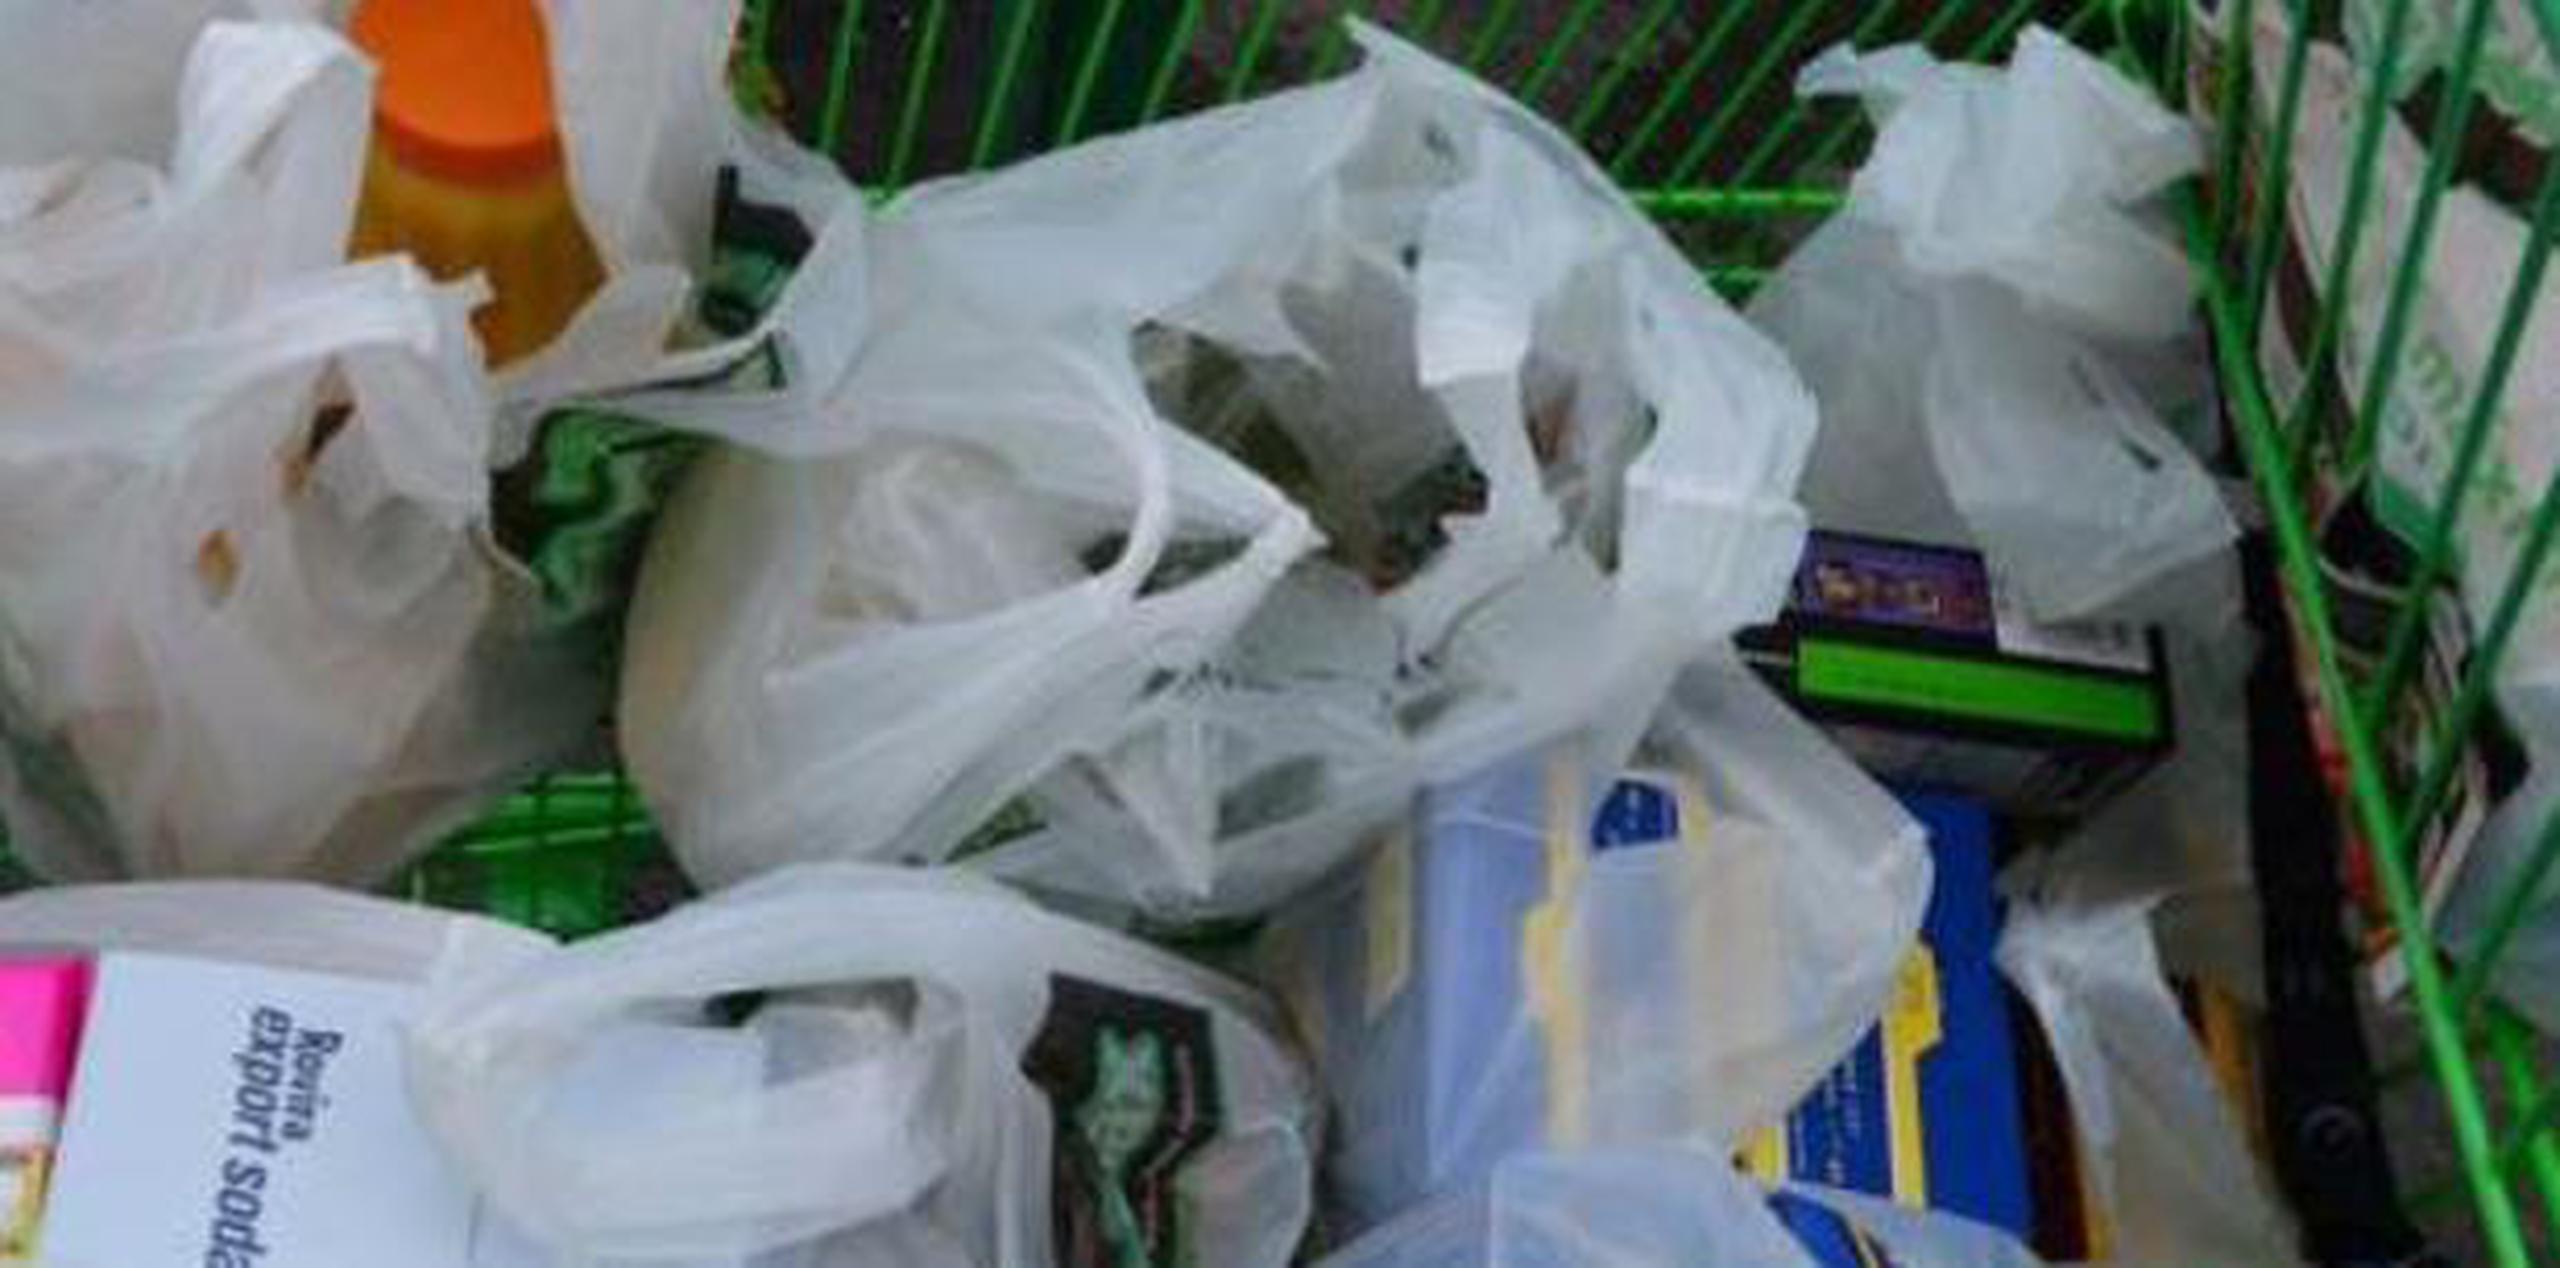 Hay varios proyectos de ley para enmendar la ley de las bolsa plásticas. (archivo)